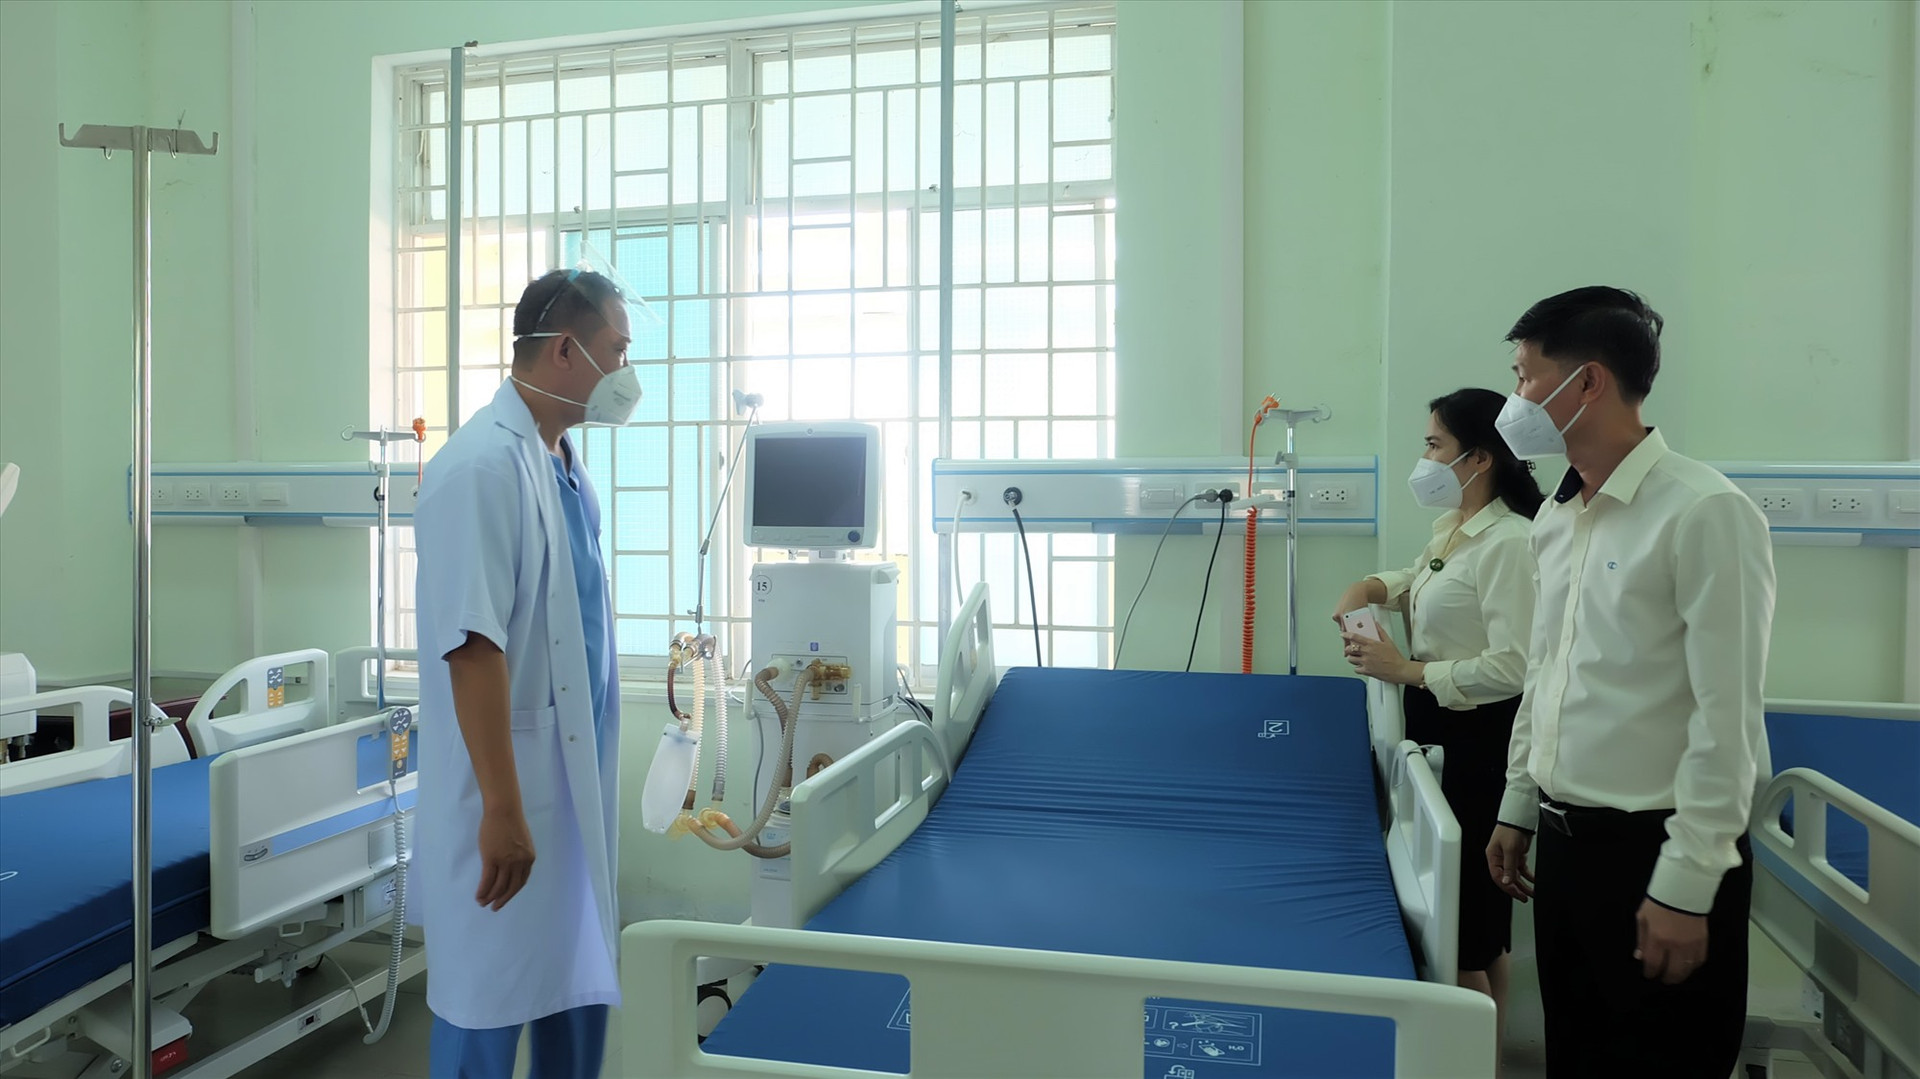 Tập đoàn Thaco trao tặng nhiều máy móc, thiết bị thiết yếu để điều trị bệnh nhân Covid-19 thể nặng. Ảnh: M.L